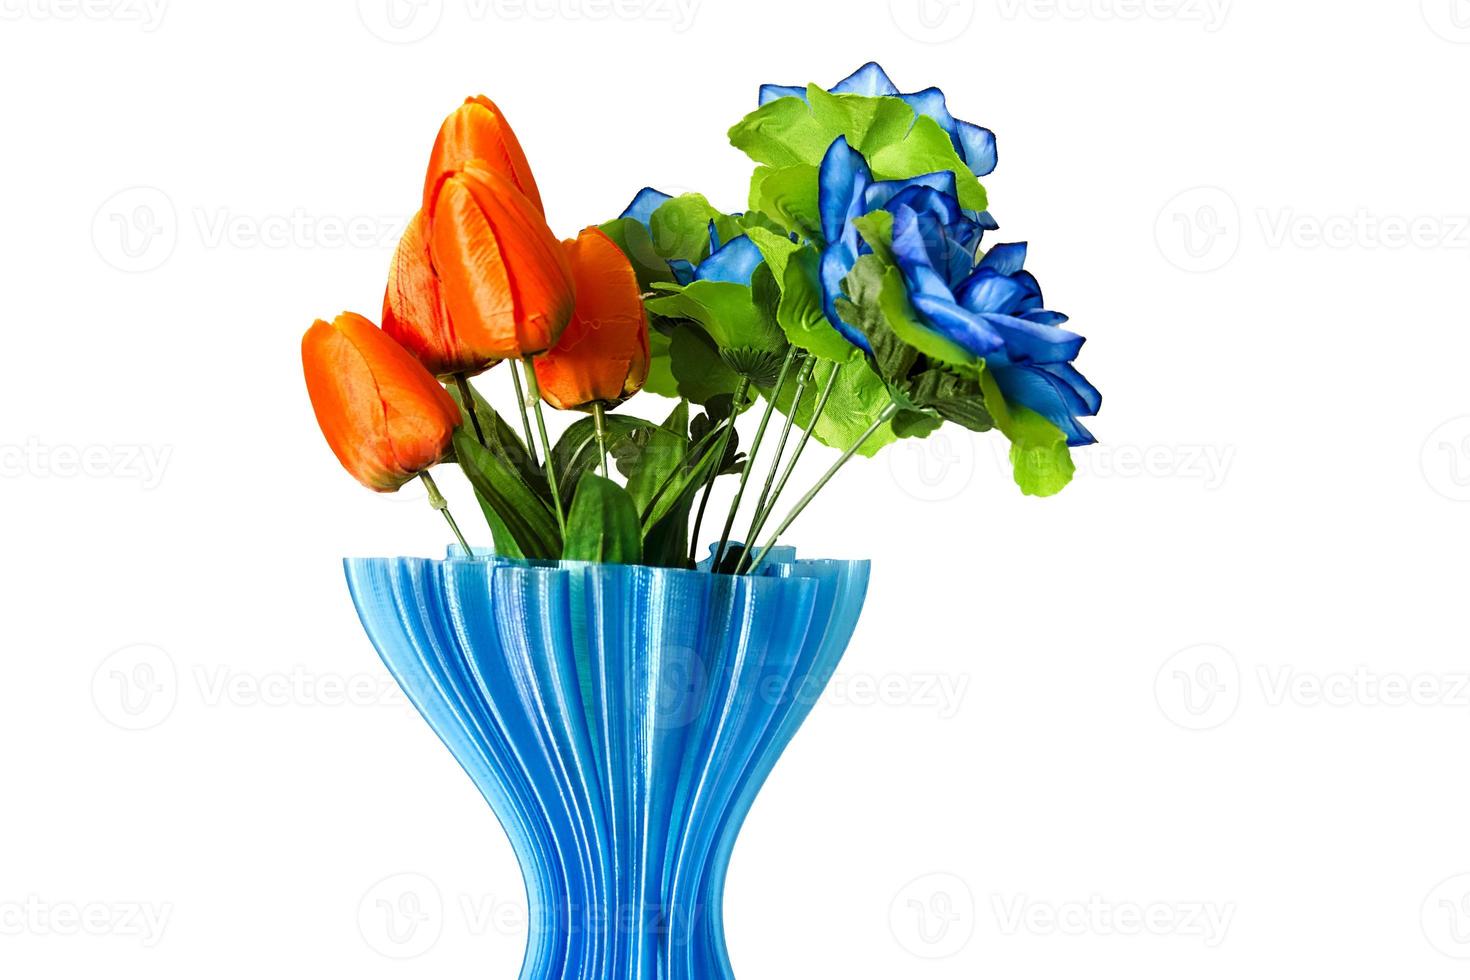 un mazzo di tulipani in un vasetto azzurro foto